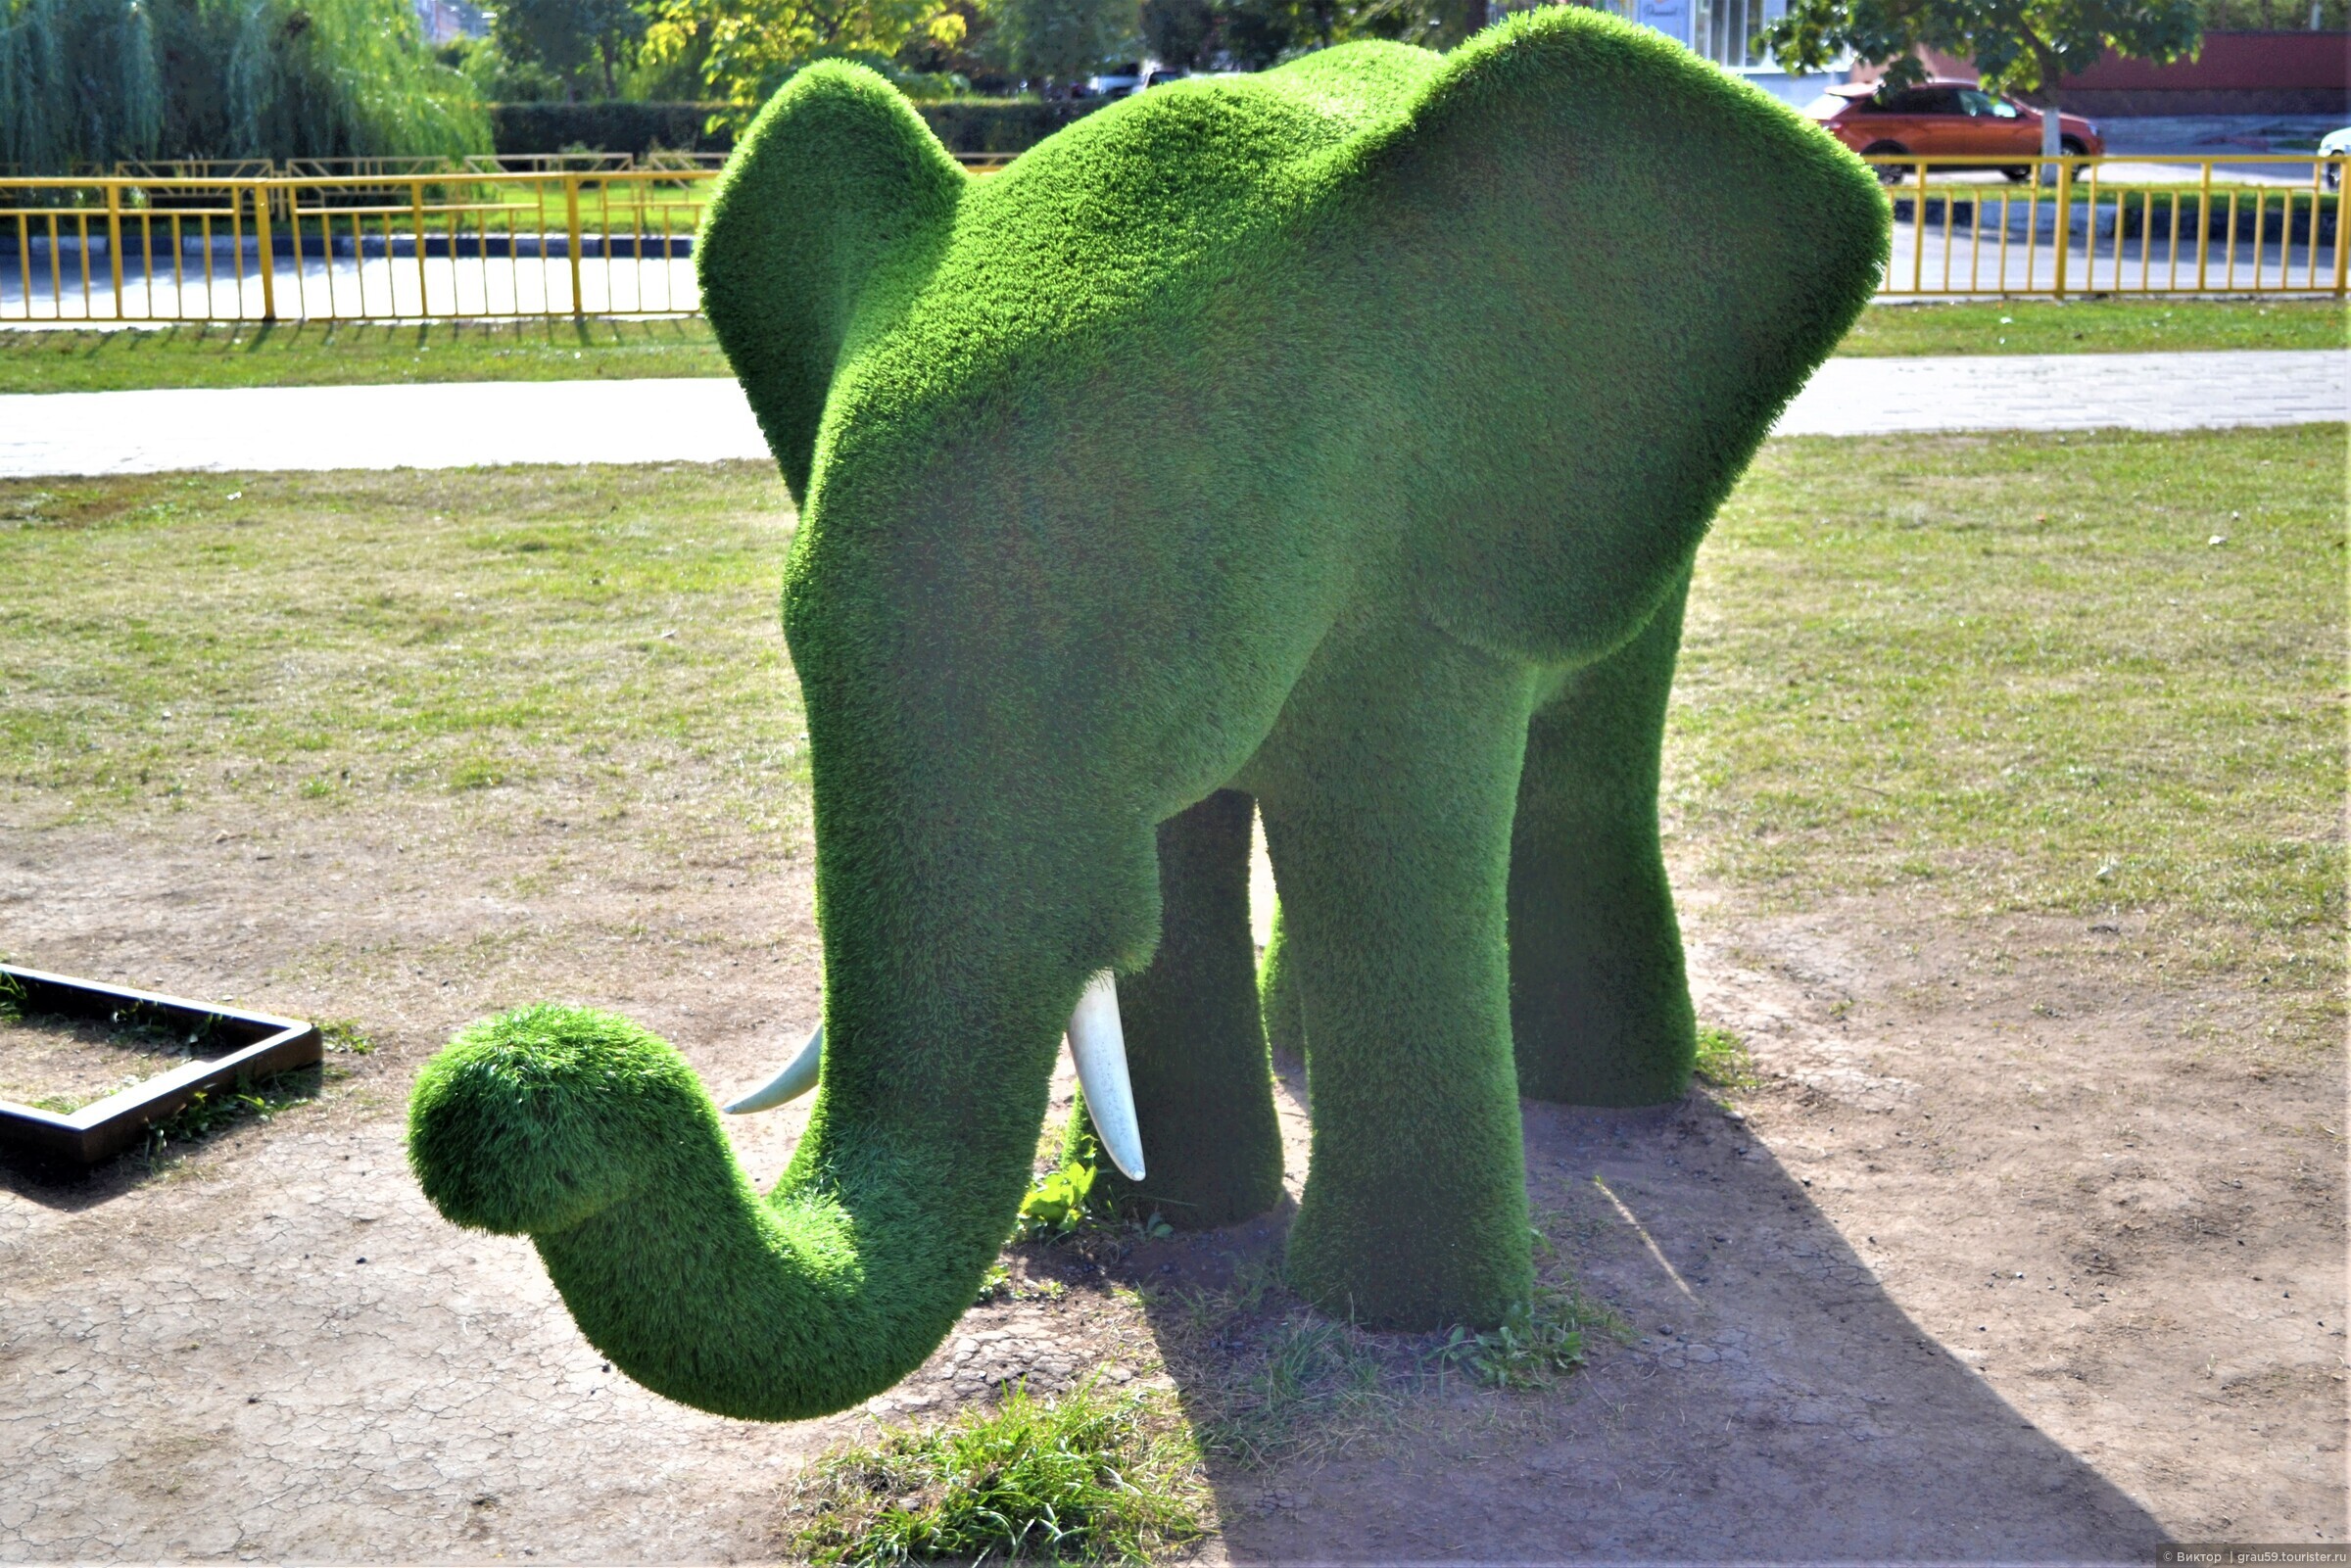 Оно зеленое. Зеленый слон Саратов. Зелёный слон беседка Саратов. Сквер имени Фридриха Энгельс.